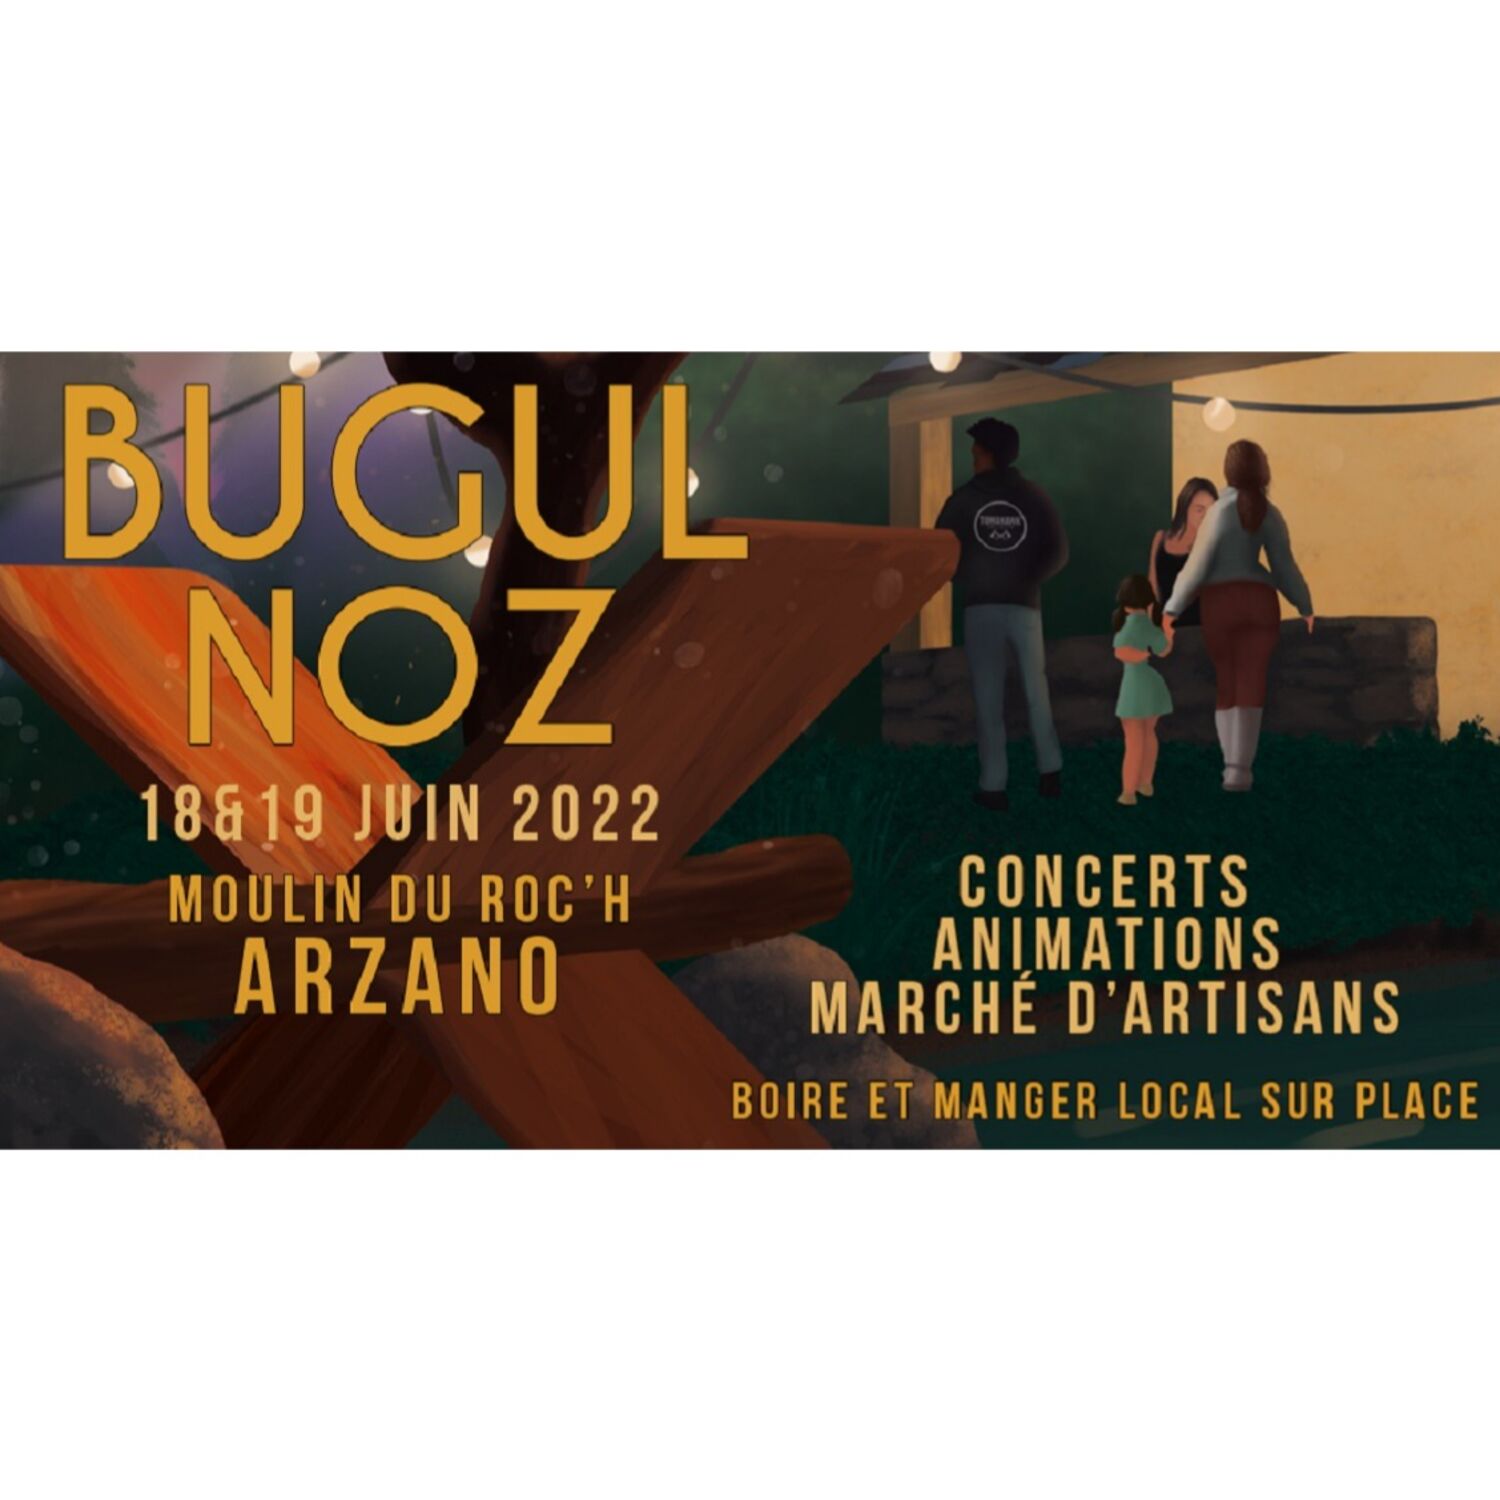 Festival Bugul Noz à Arzano les 18 et 19 juin